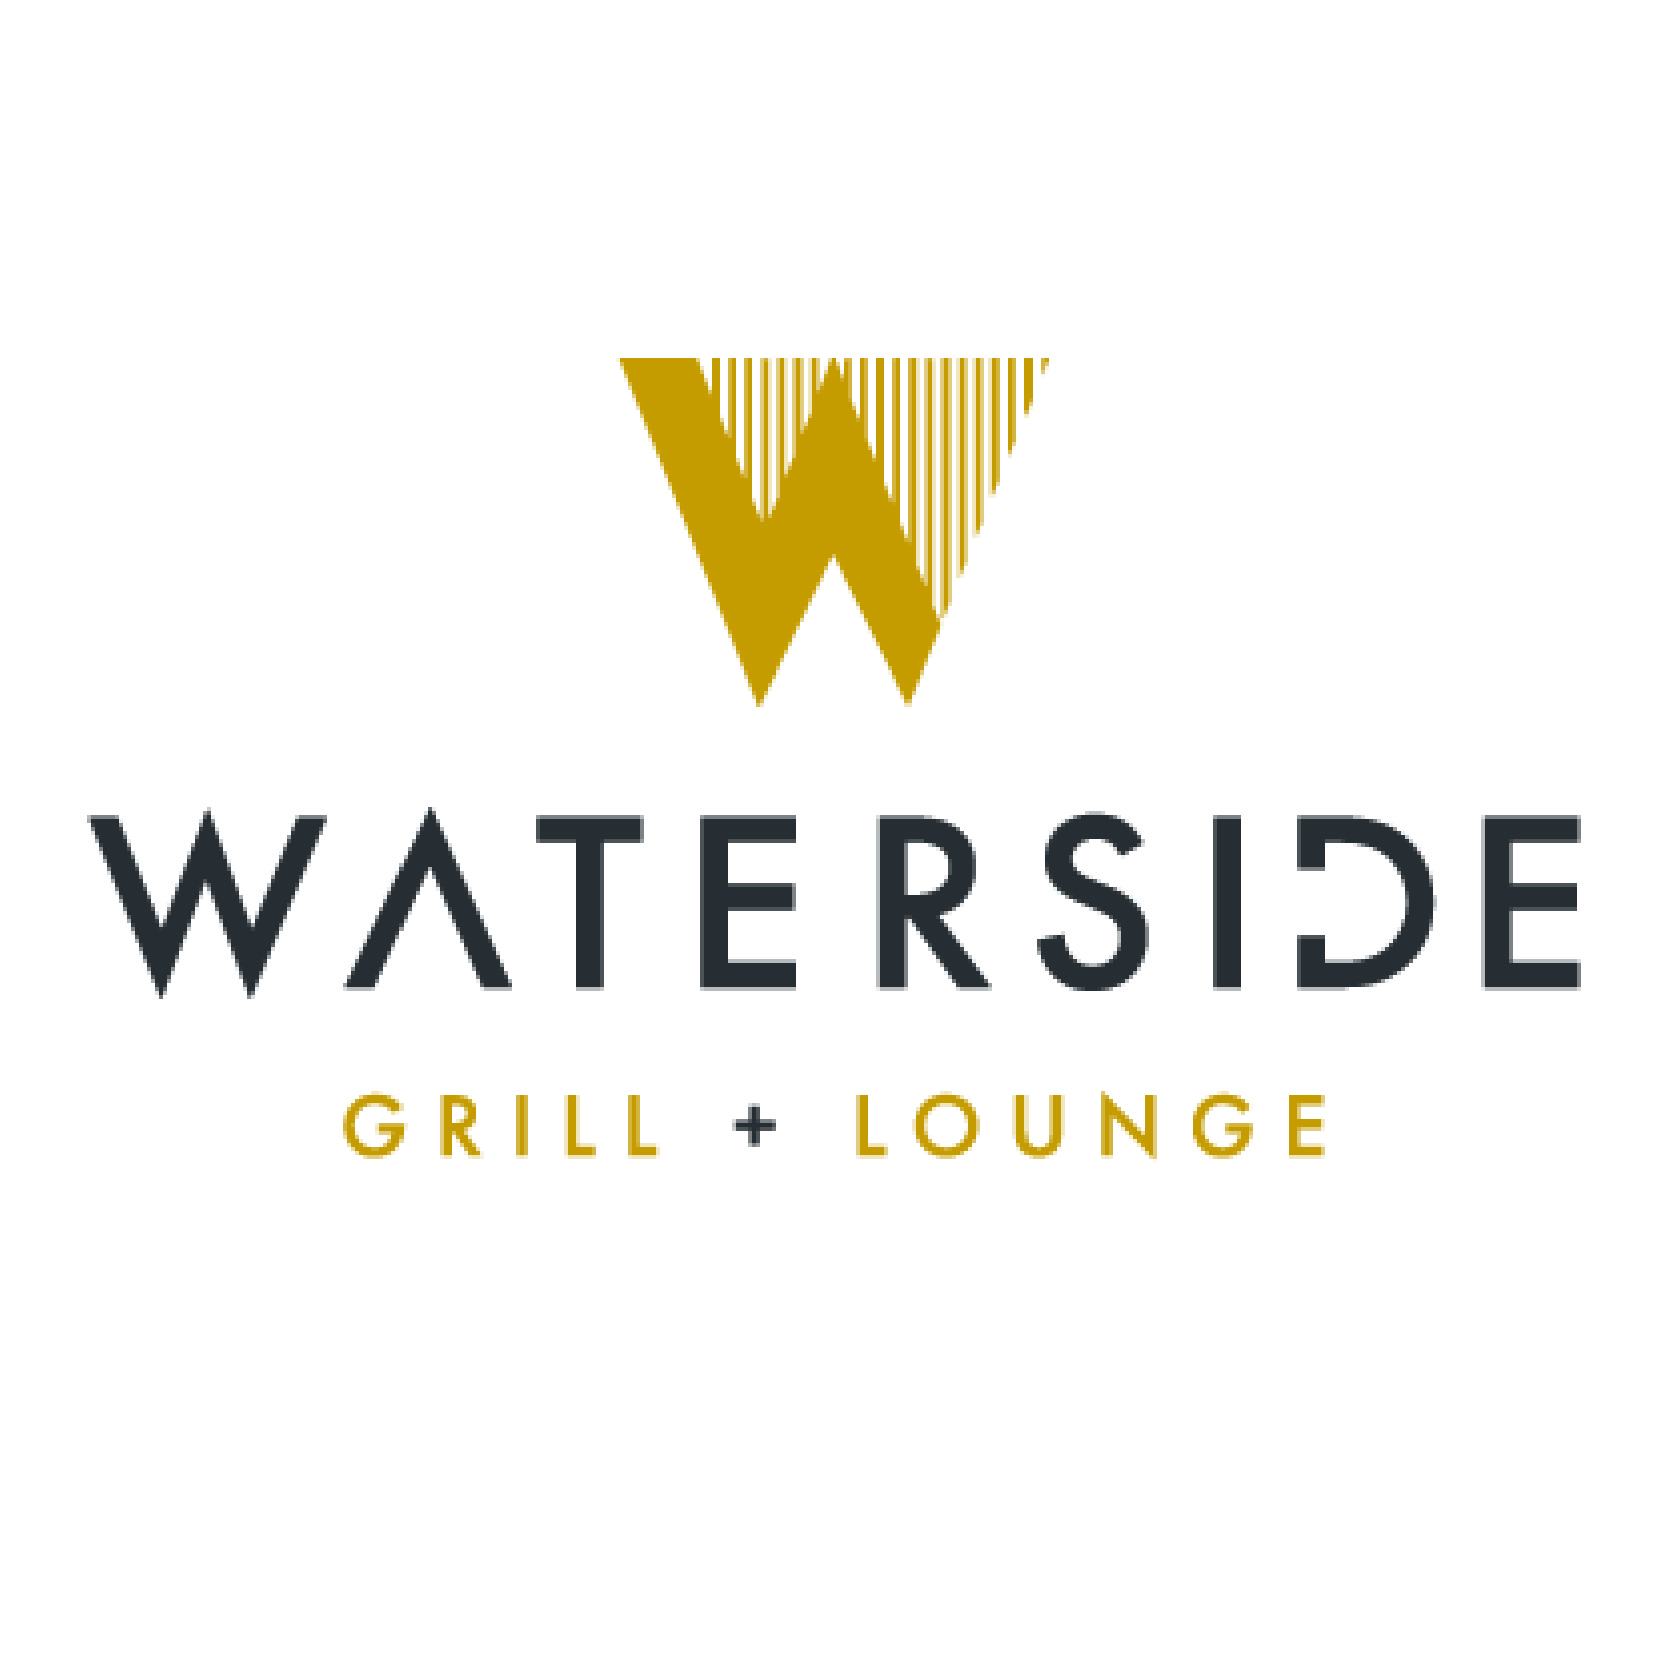 Waterside Grill + Lounge